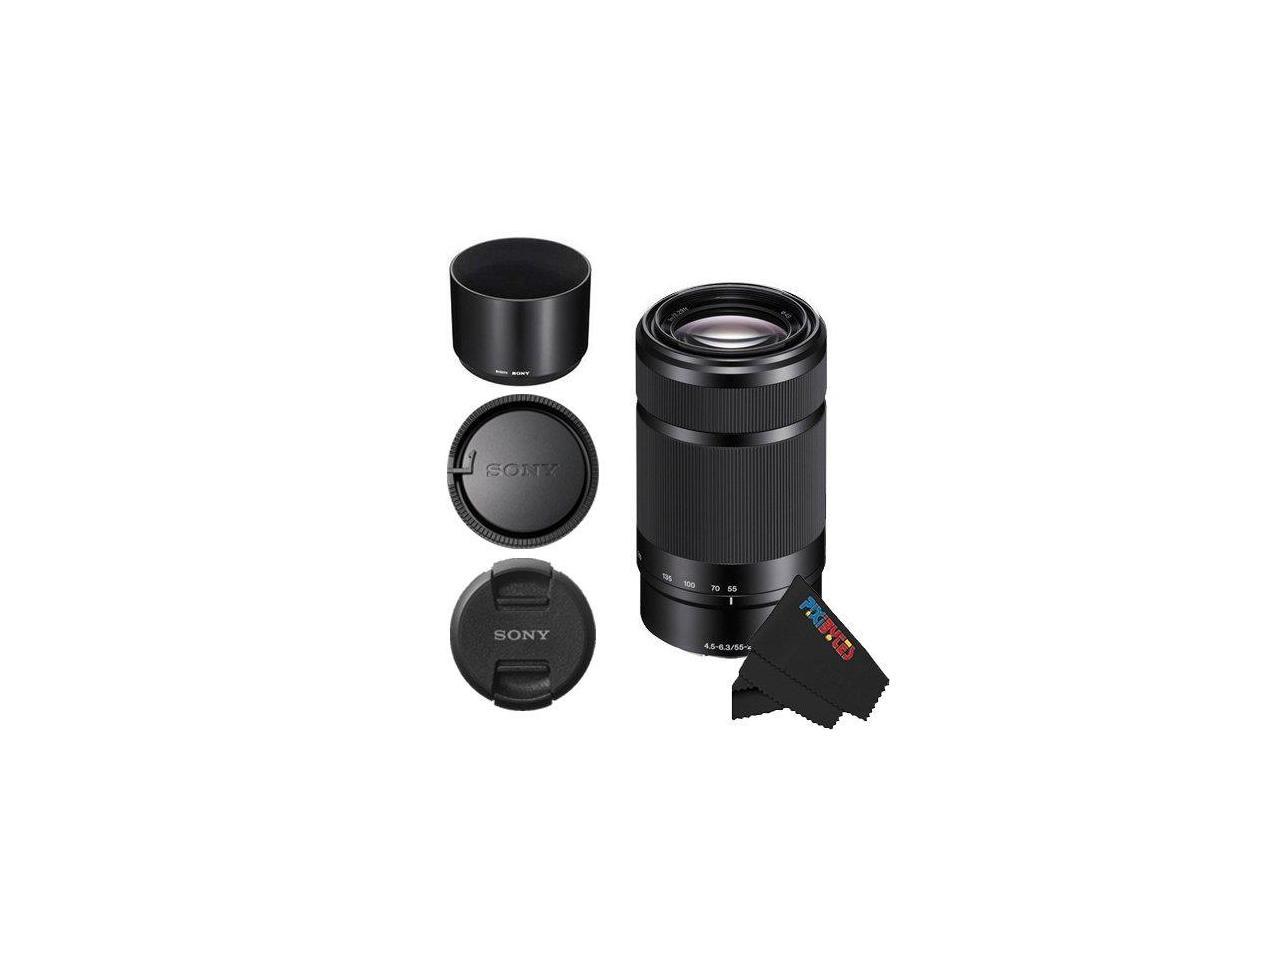 Sony E-Mount 55-210mm F4.5-6.3 Lens for Sony E-Mount / NEX Cameras (Black)